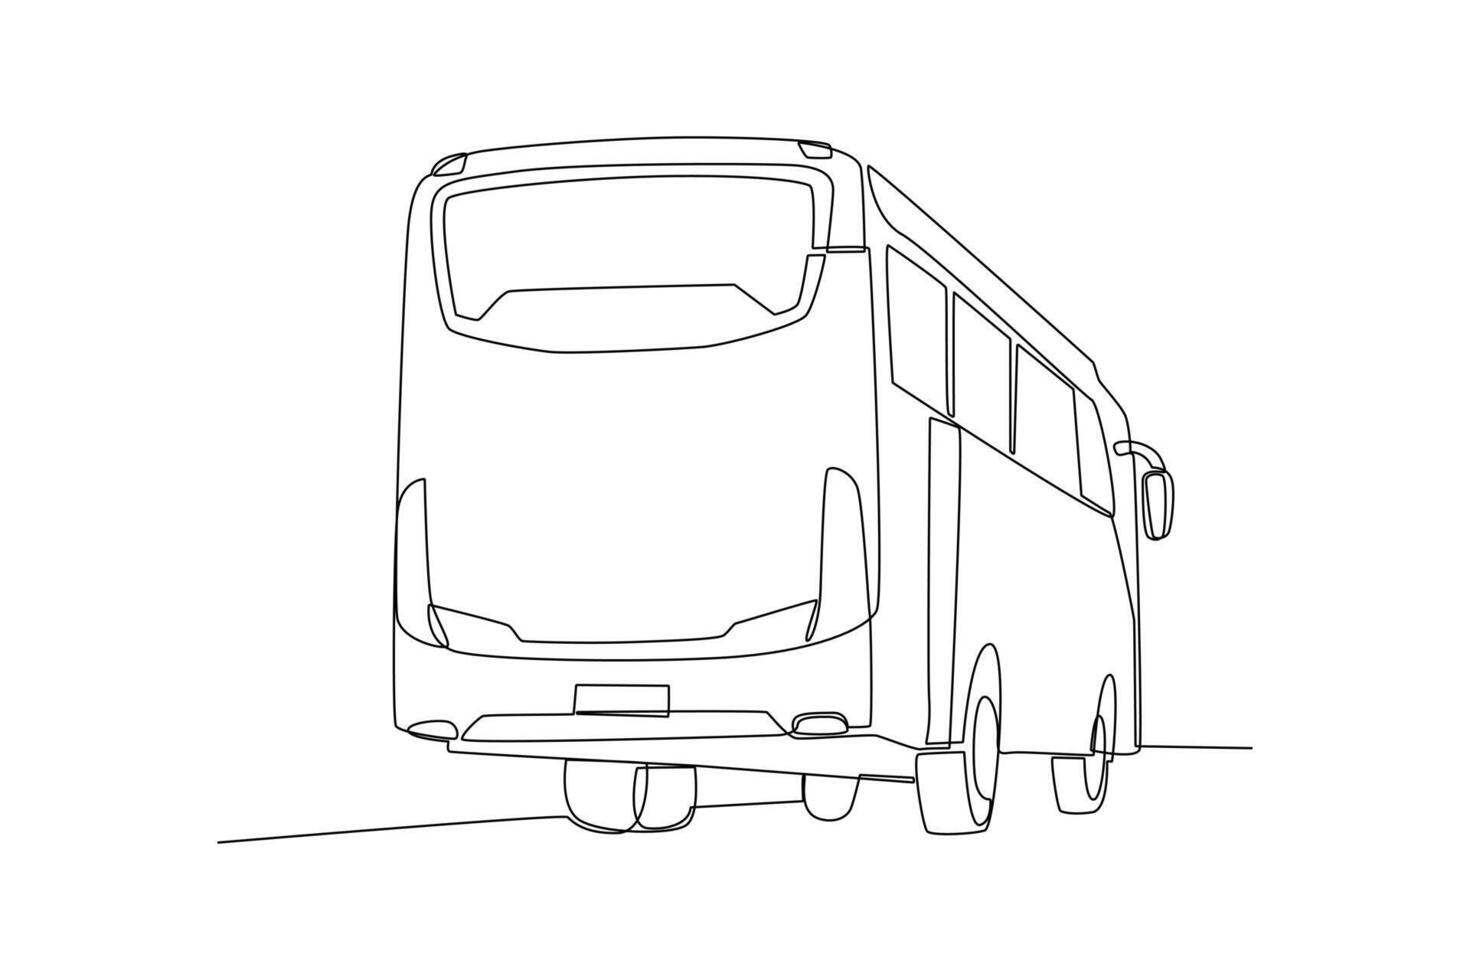 kontinuierlich einer Linie Zeichnung modern Bus. Land Transport Konzept. Gekritzel Vektor Illustration.